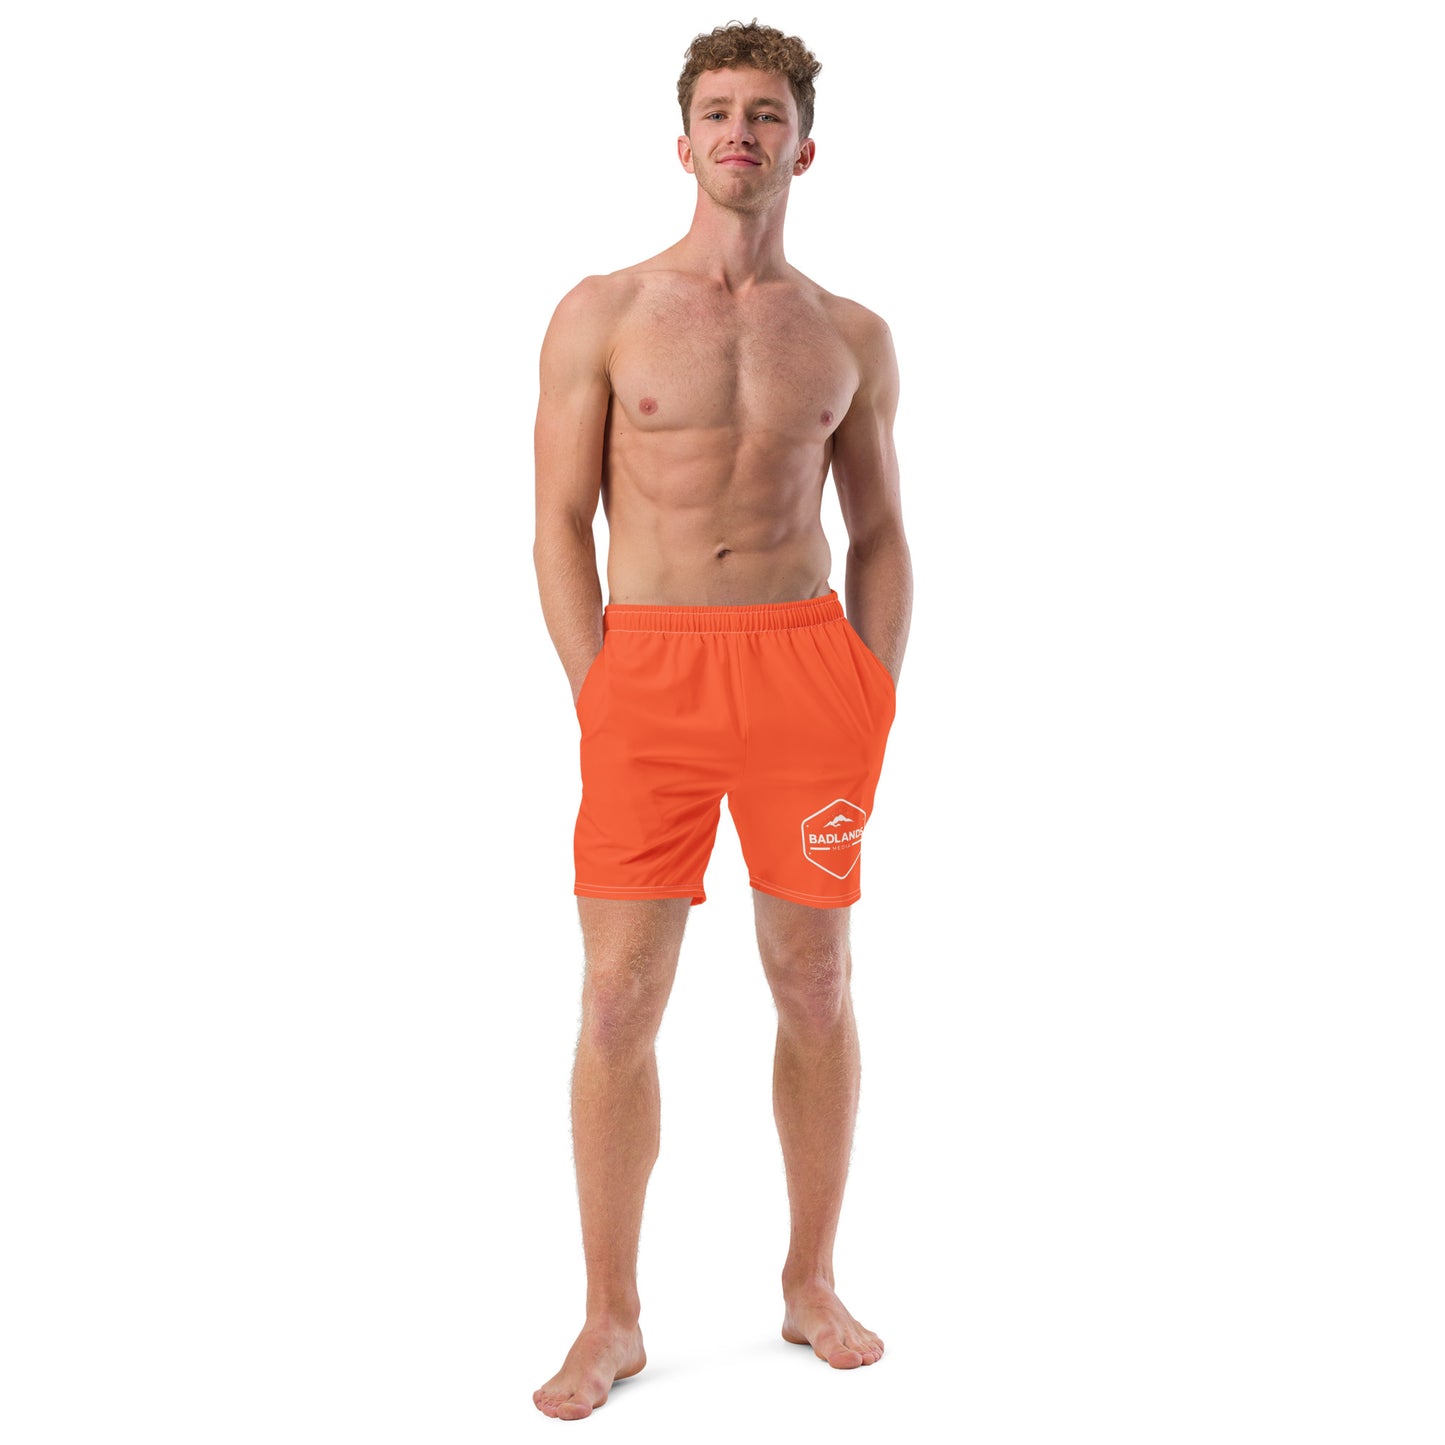 Badlands Men's Swim Trunks in electric orange